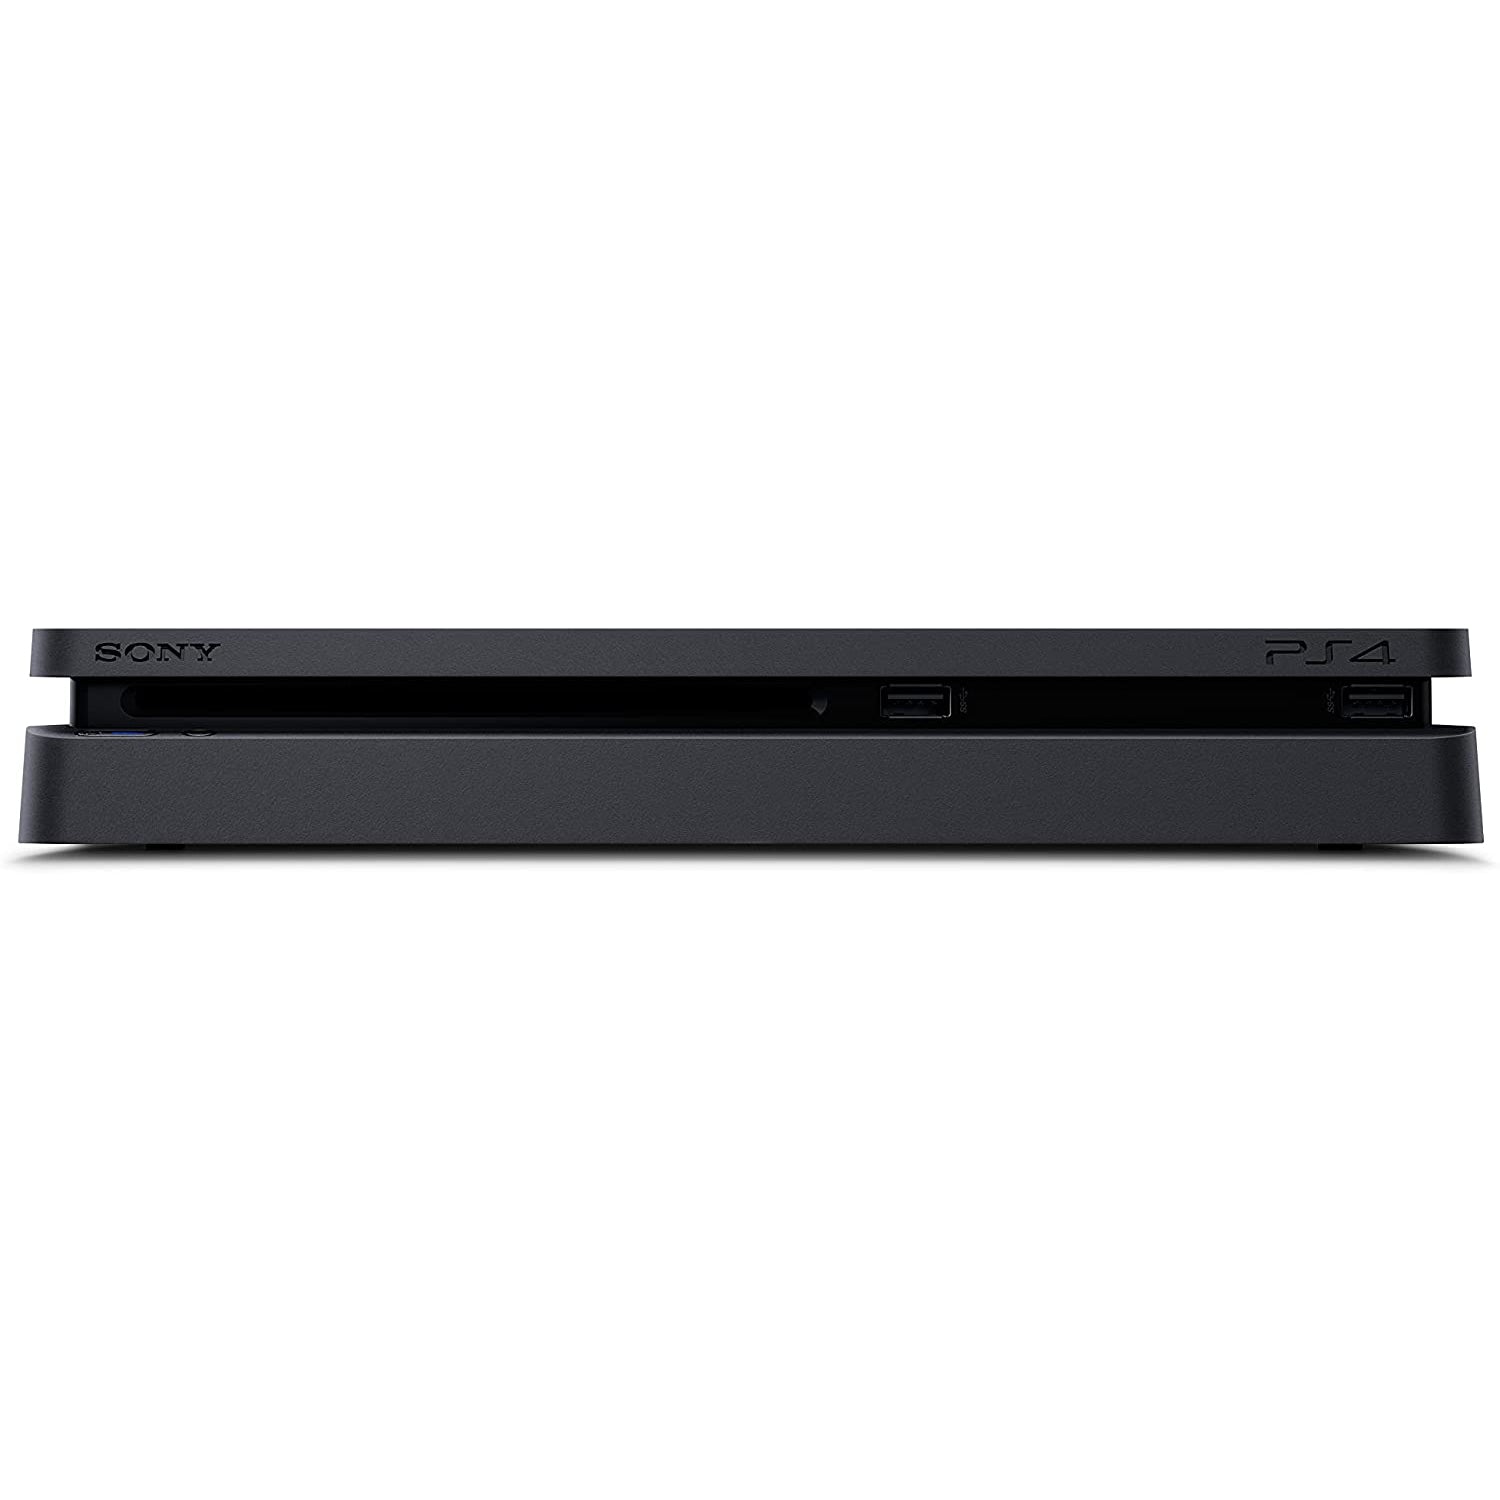 Sony-PlayStation-4-Slim-Console-500GB-4_f72c33c8-5fb7-49d6-853a-f5c81747f684